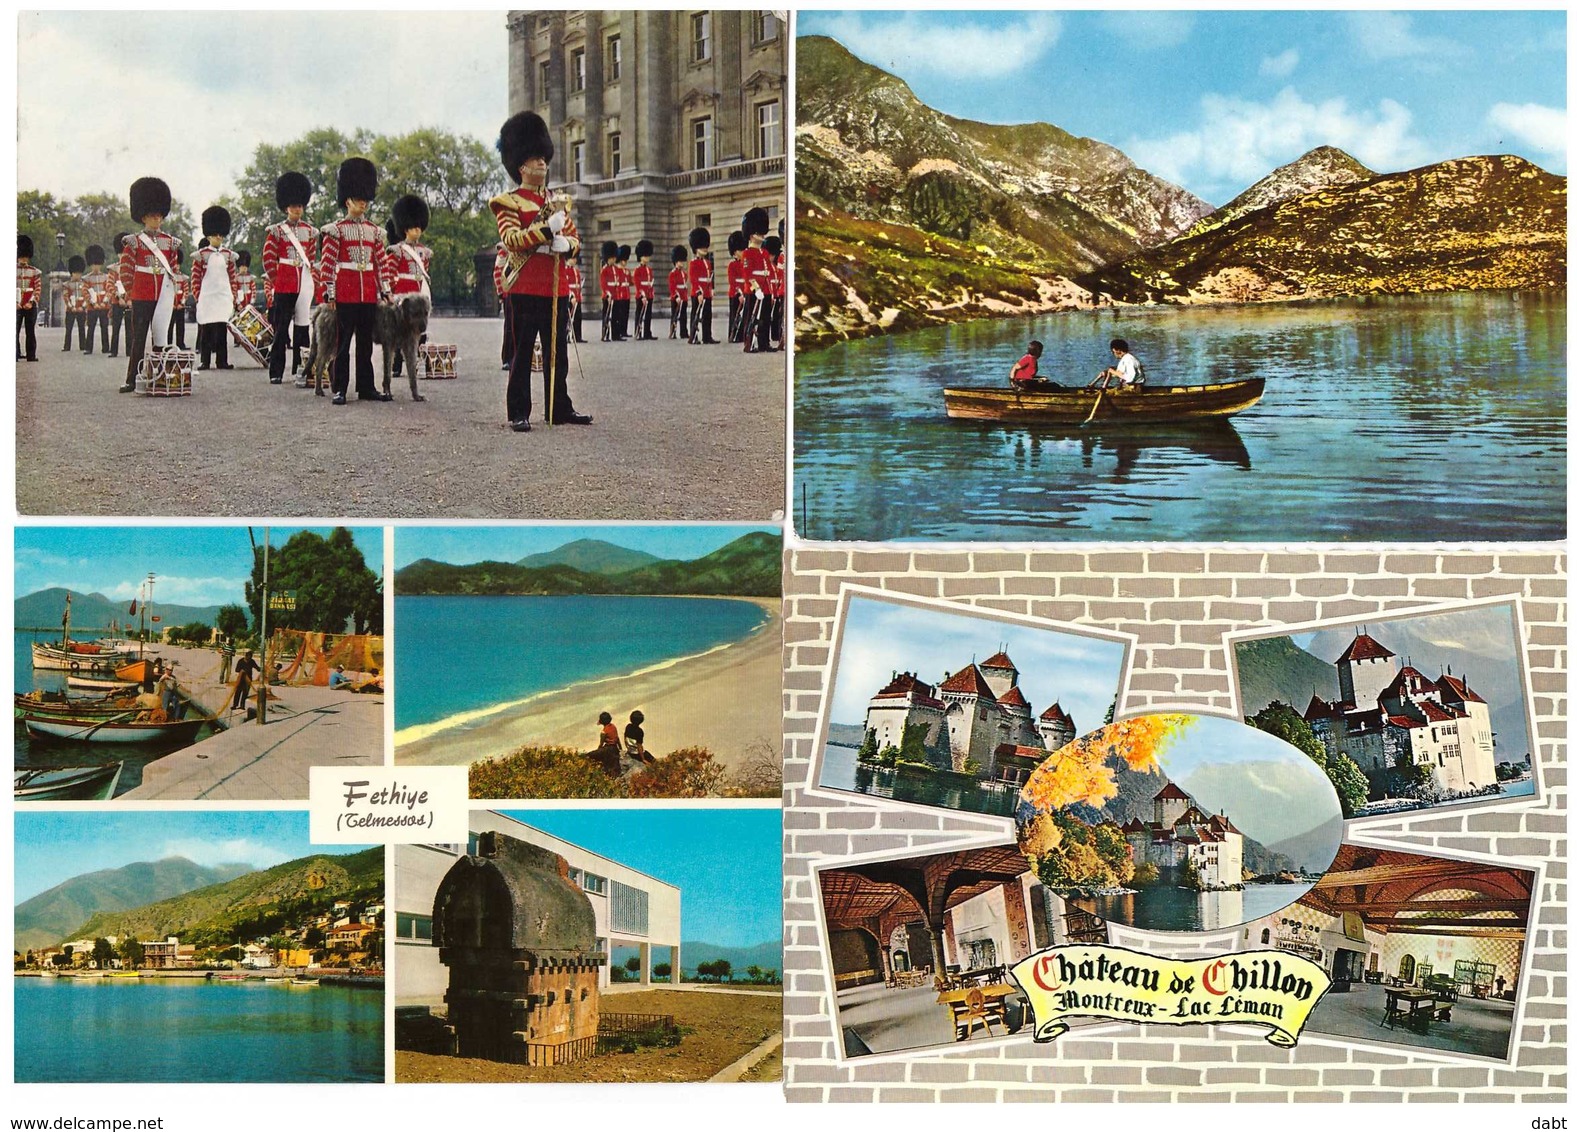 lot 640 cartes postales étrangères , cartes scannées incluses